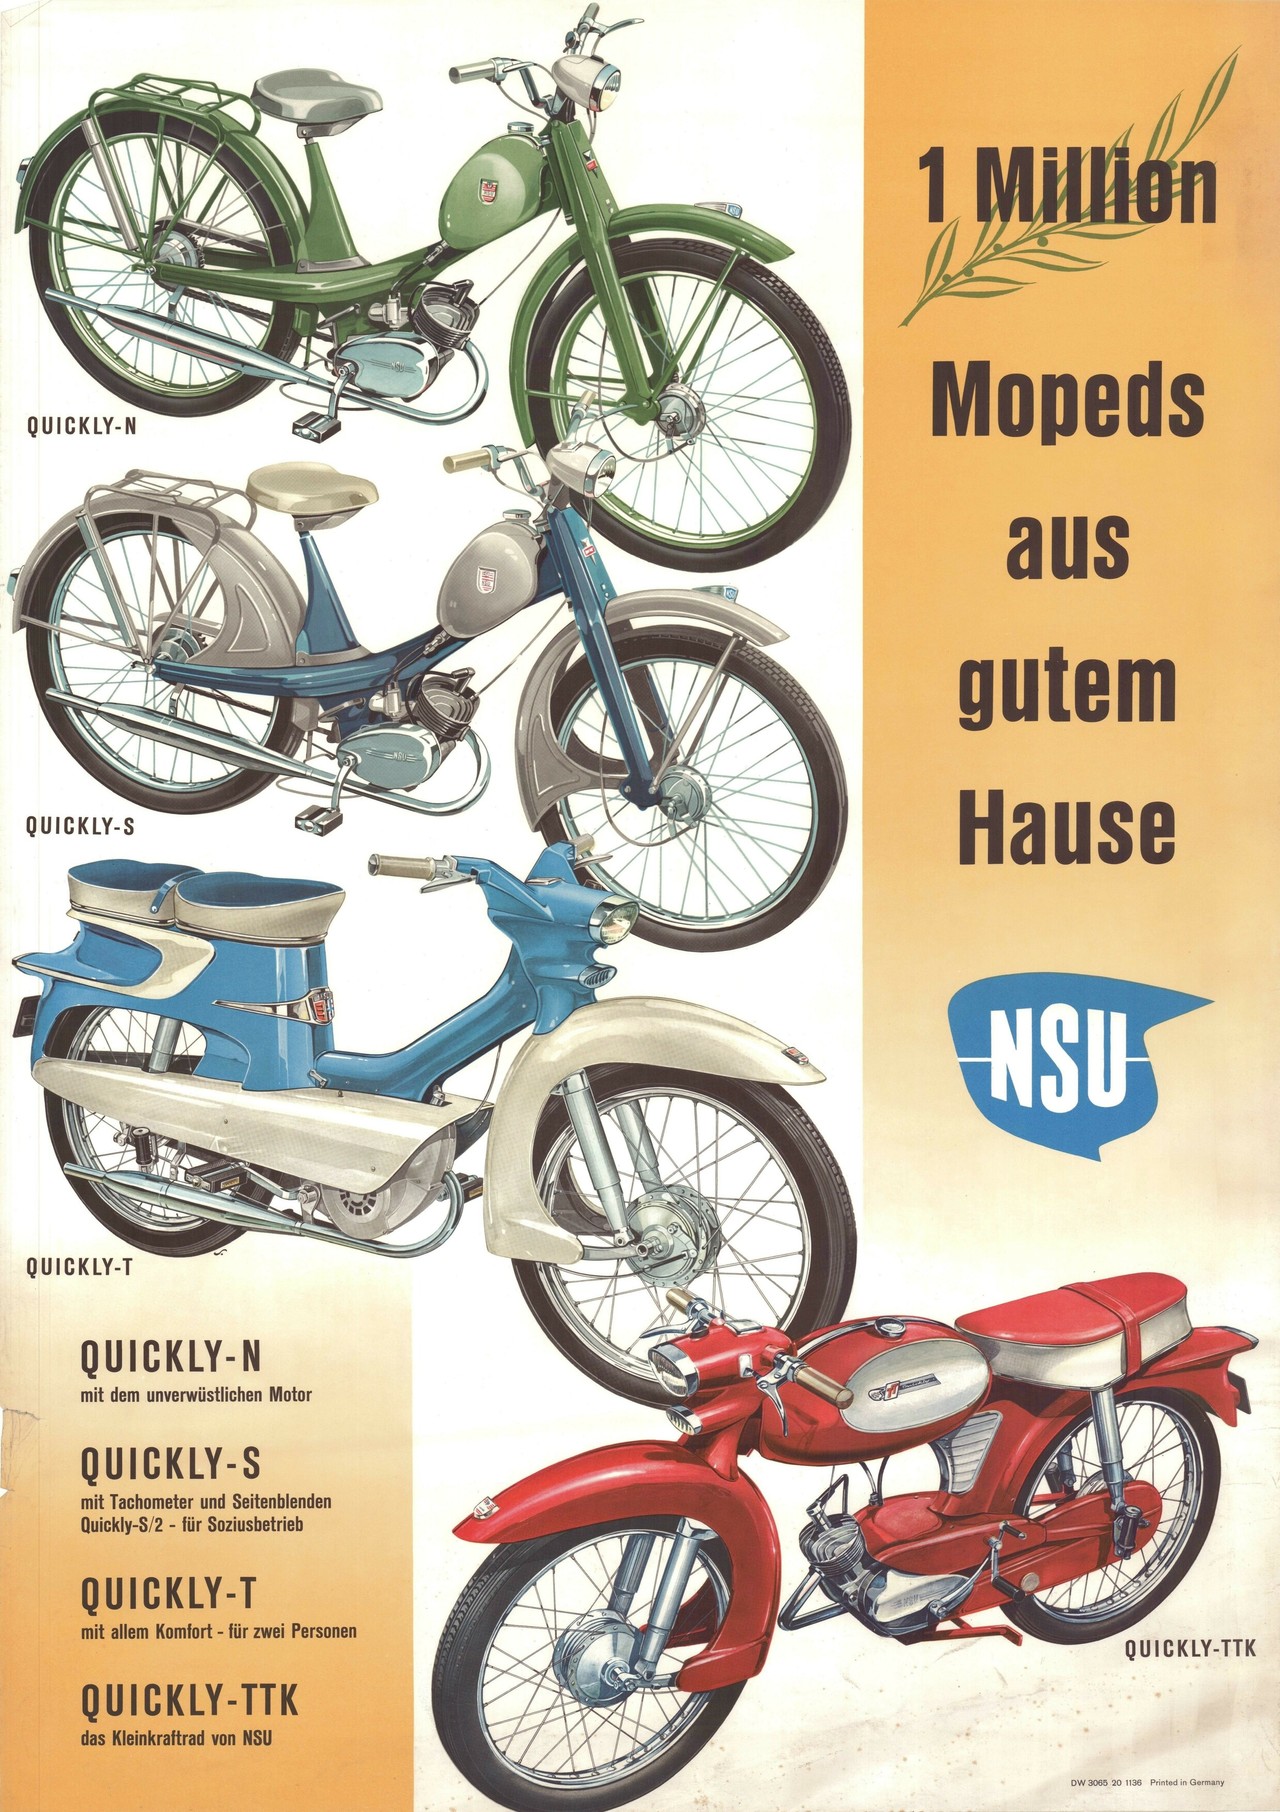 Moped-Werbung in den 50ern: "nicht mehr laufen, NSU Quickly kaufen".